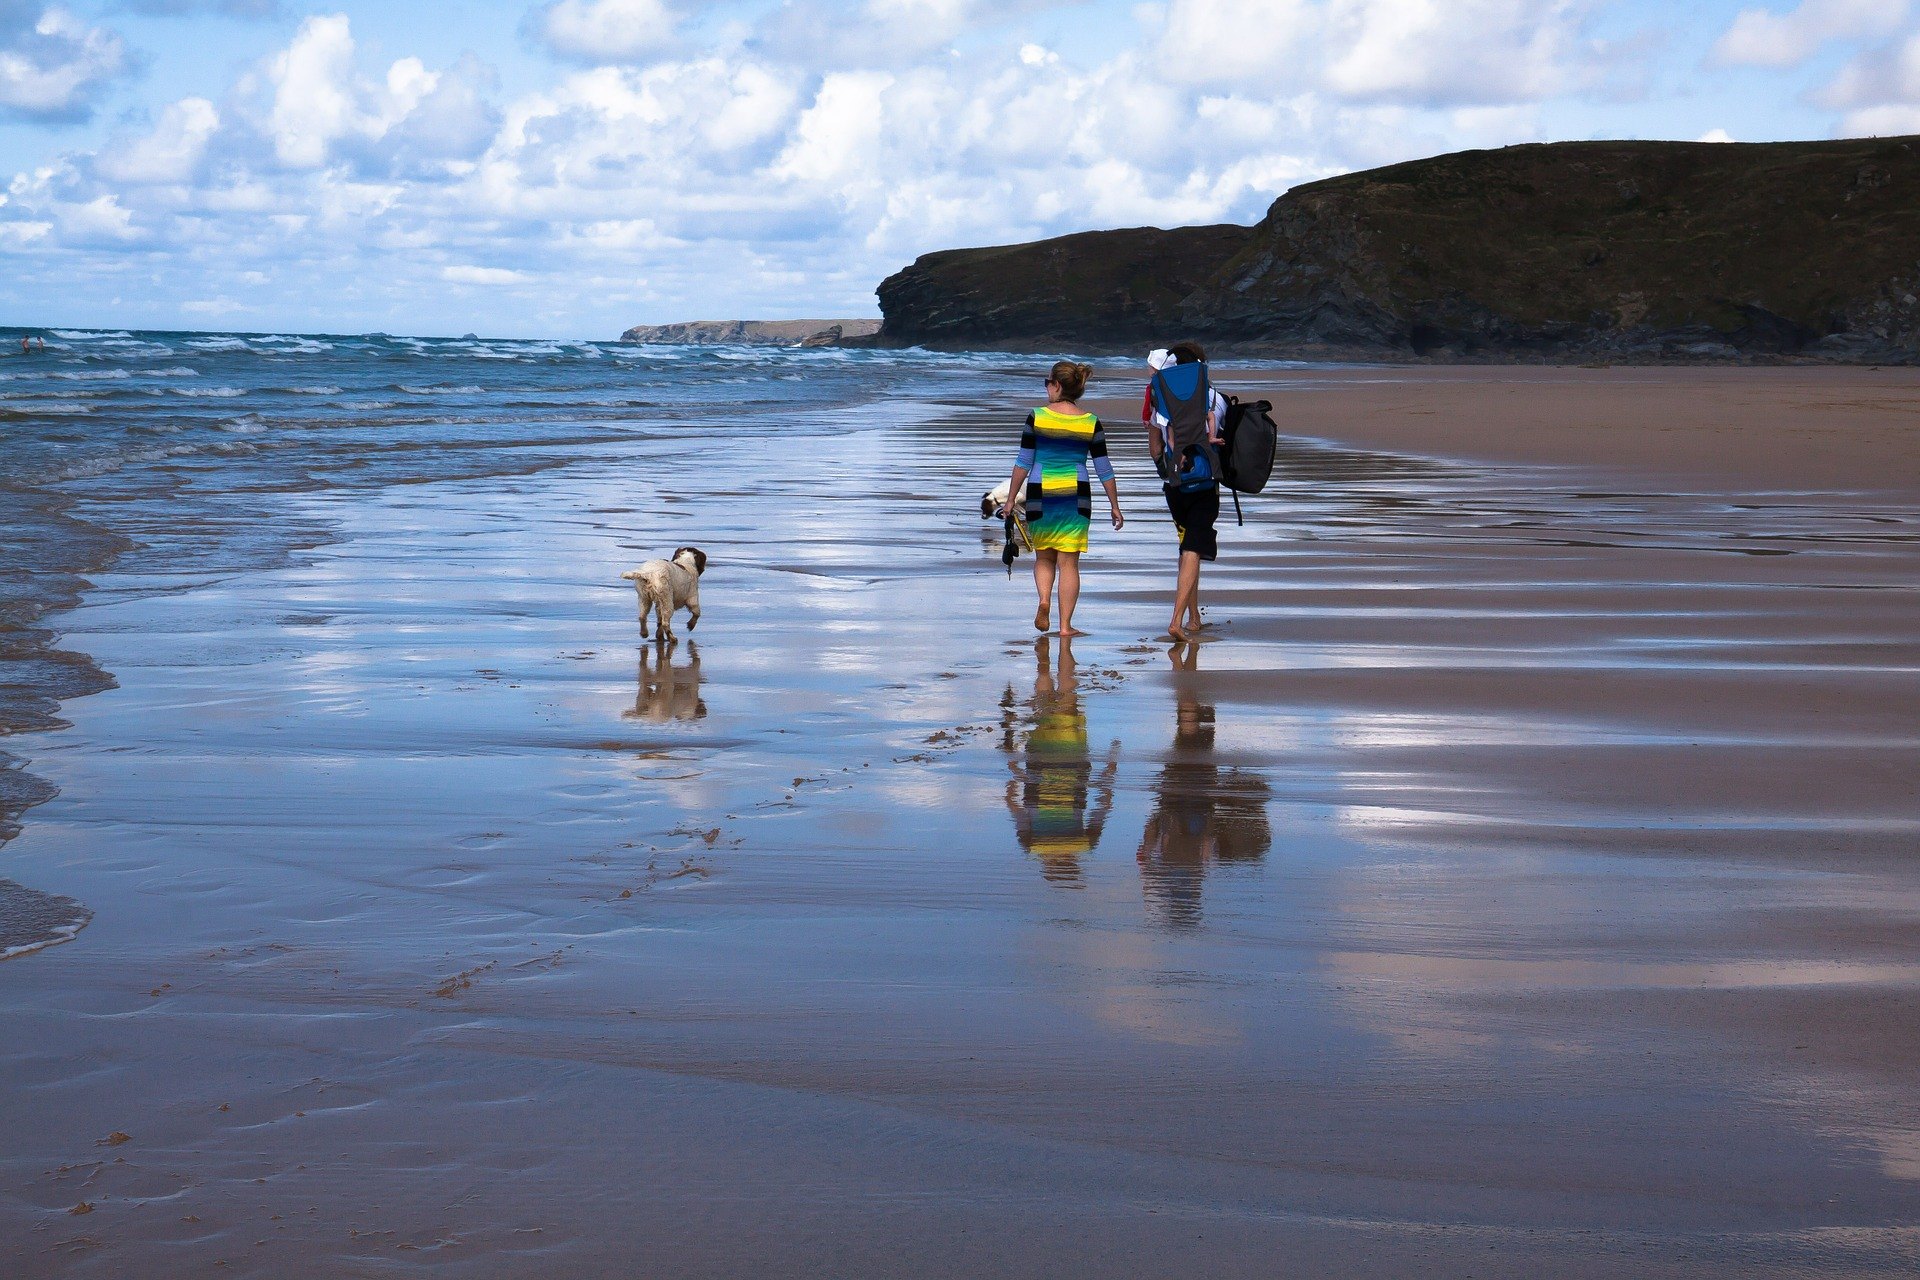 Výlet se psem k moři vyžaduje pečlivou přípravu kvůli bezpečnosti domácího mazlíčka a pohodlí ostatních rekreantů.